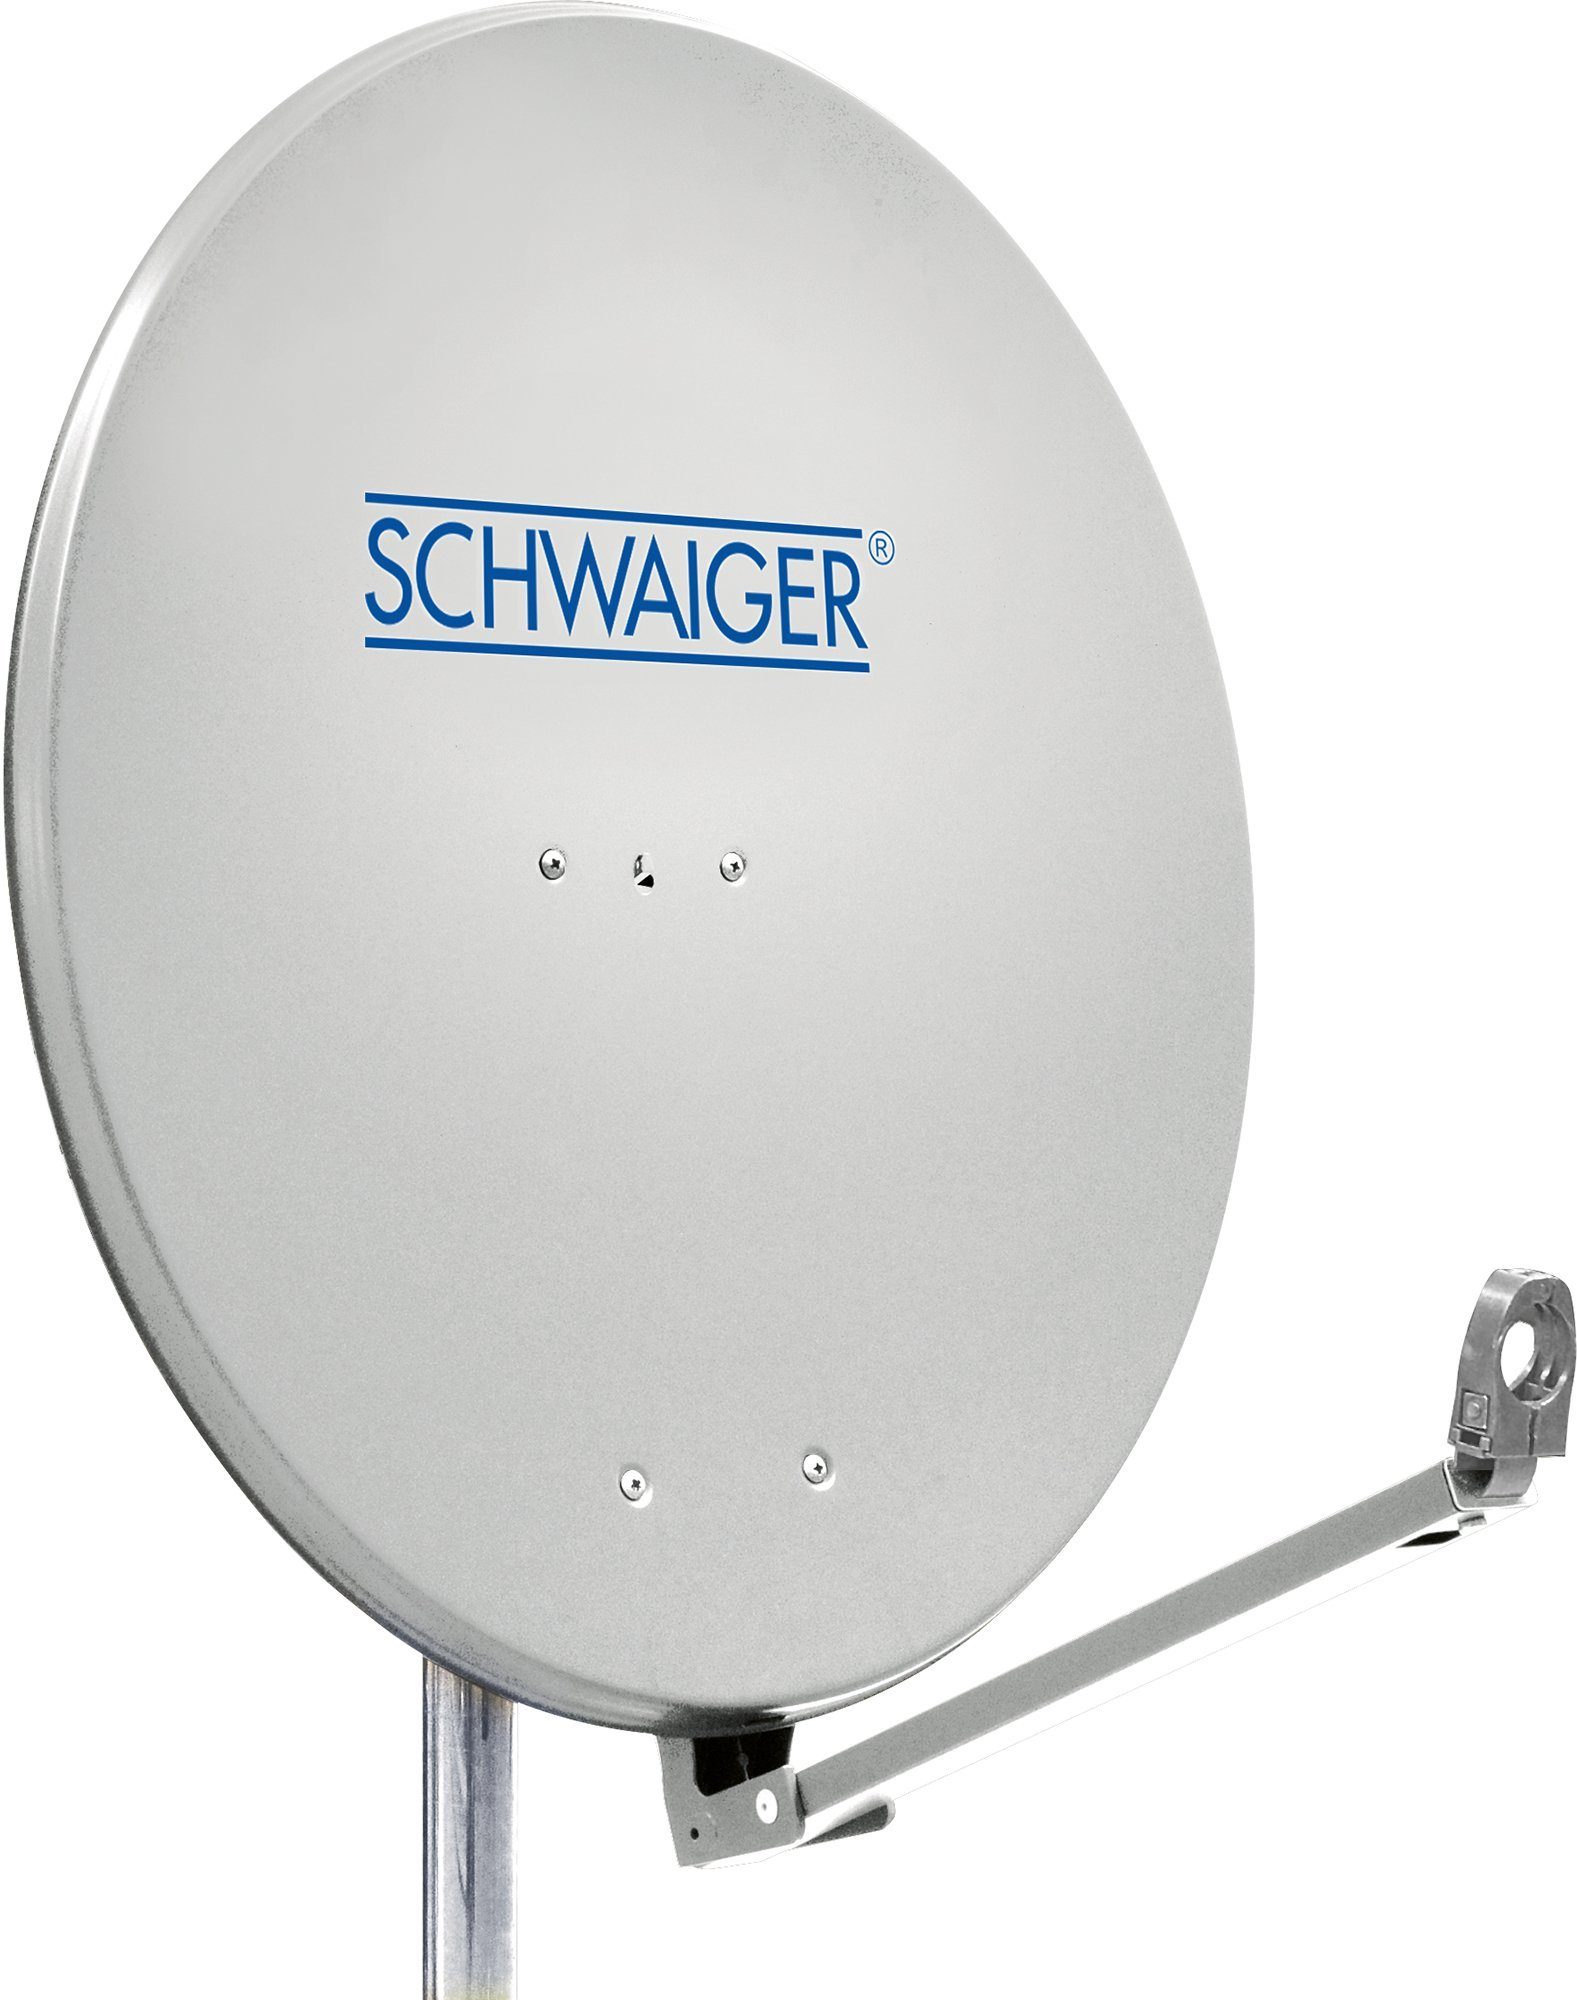 Schwaiger »SPI910.0« Sat-Spiegel (88 cm, Aluminium, hellgrau) online kaufen  | OTTO